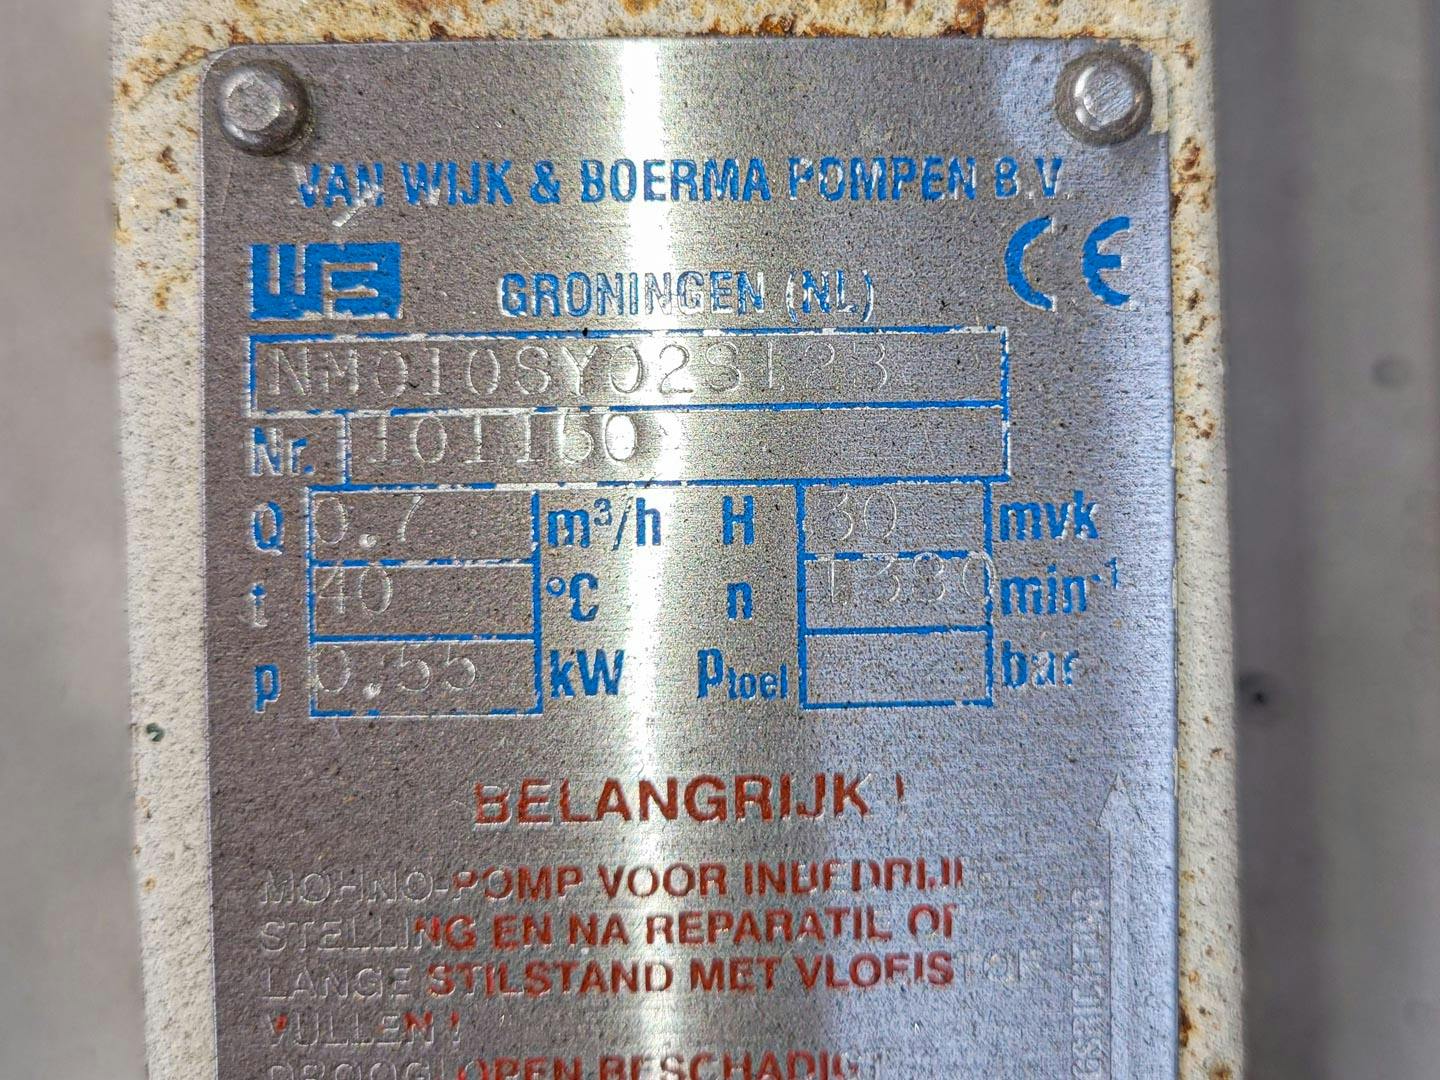 Nebi 50 Ltr - Tanque mezclador - image 14